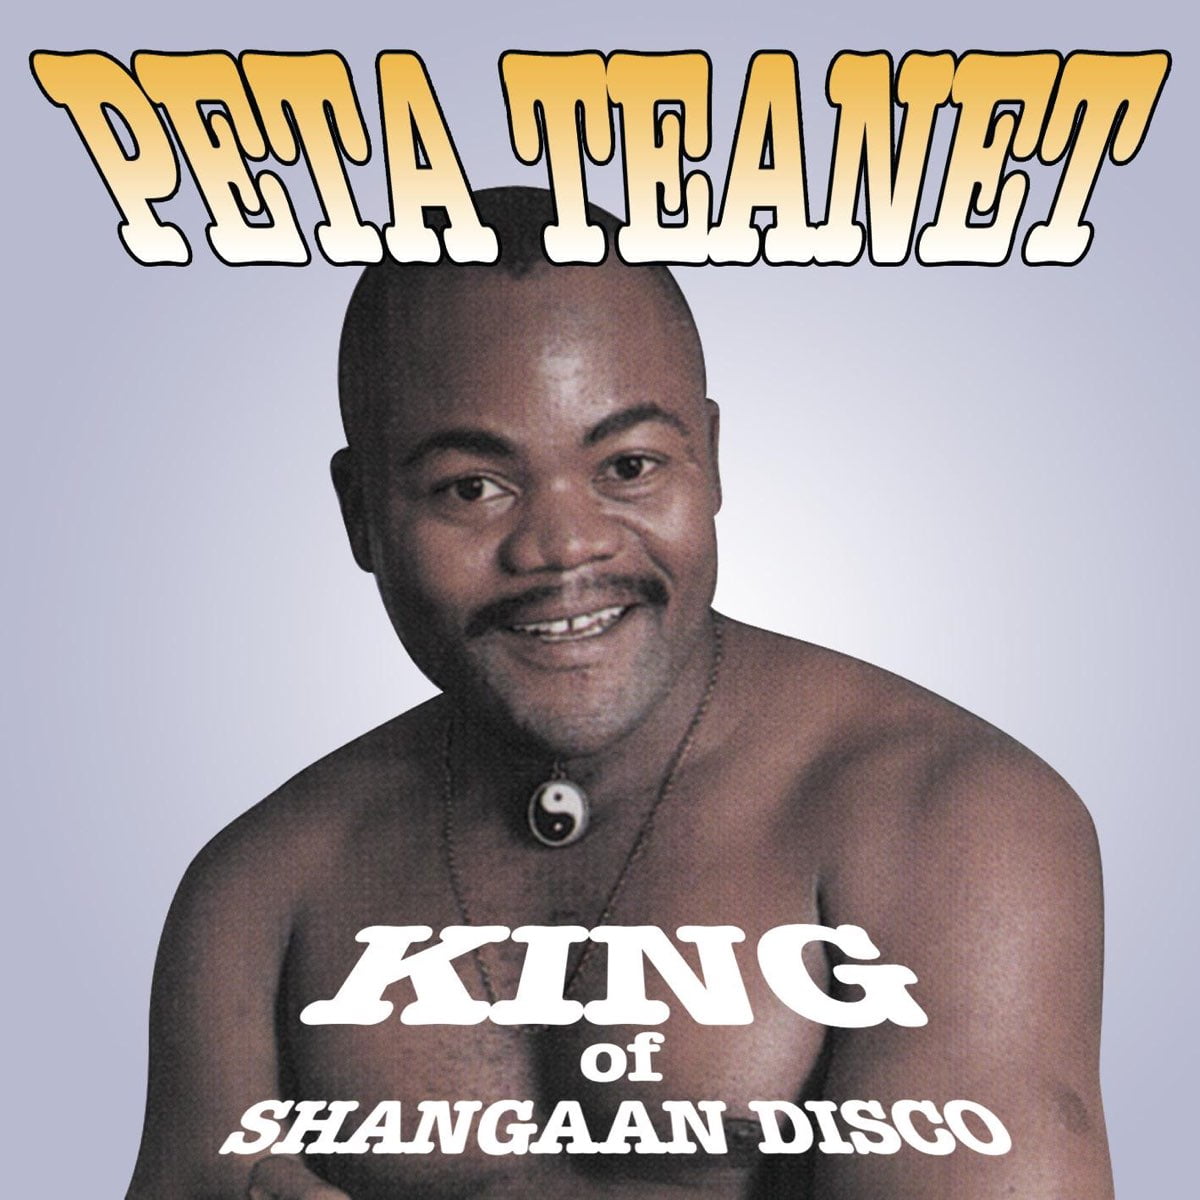 Peta Teanet – African Vibe Pt. 2 mp3 download free lyrics tik tok